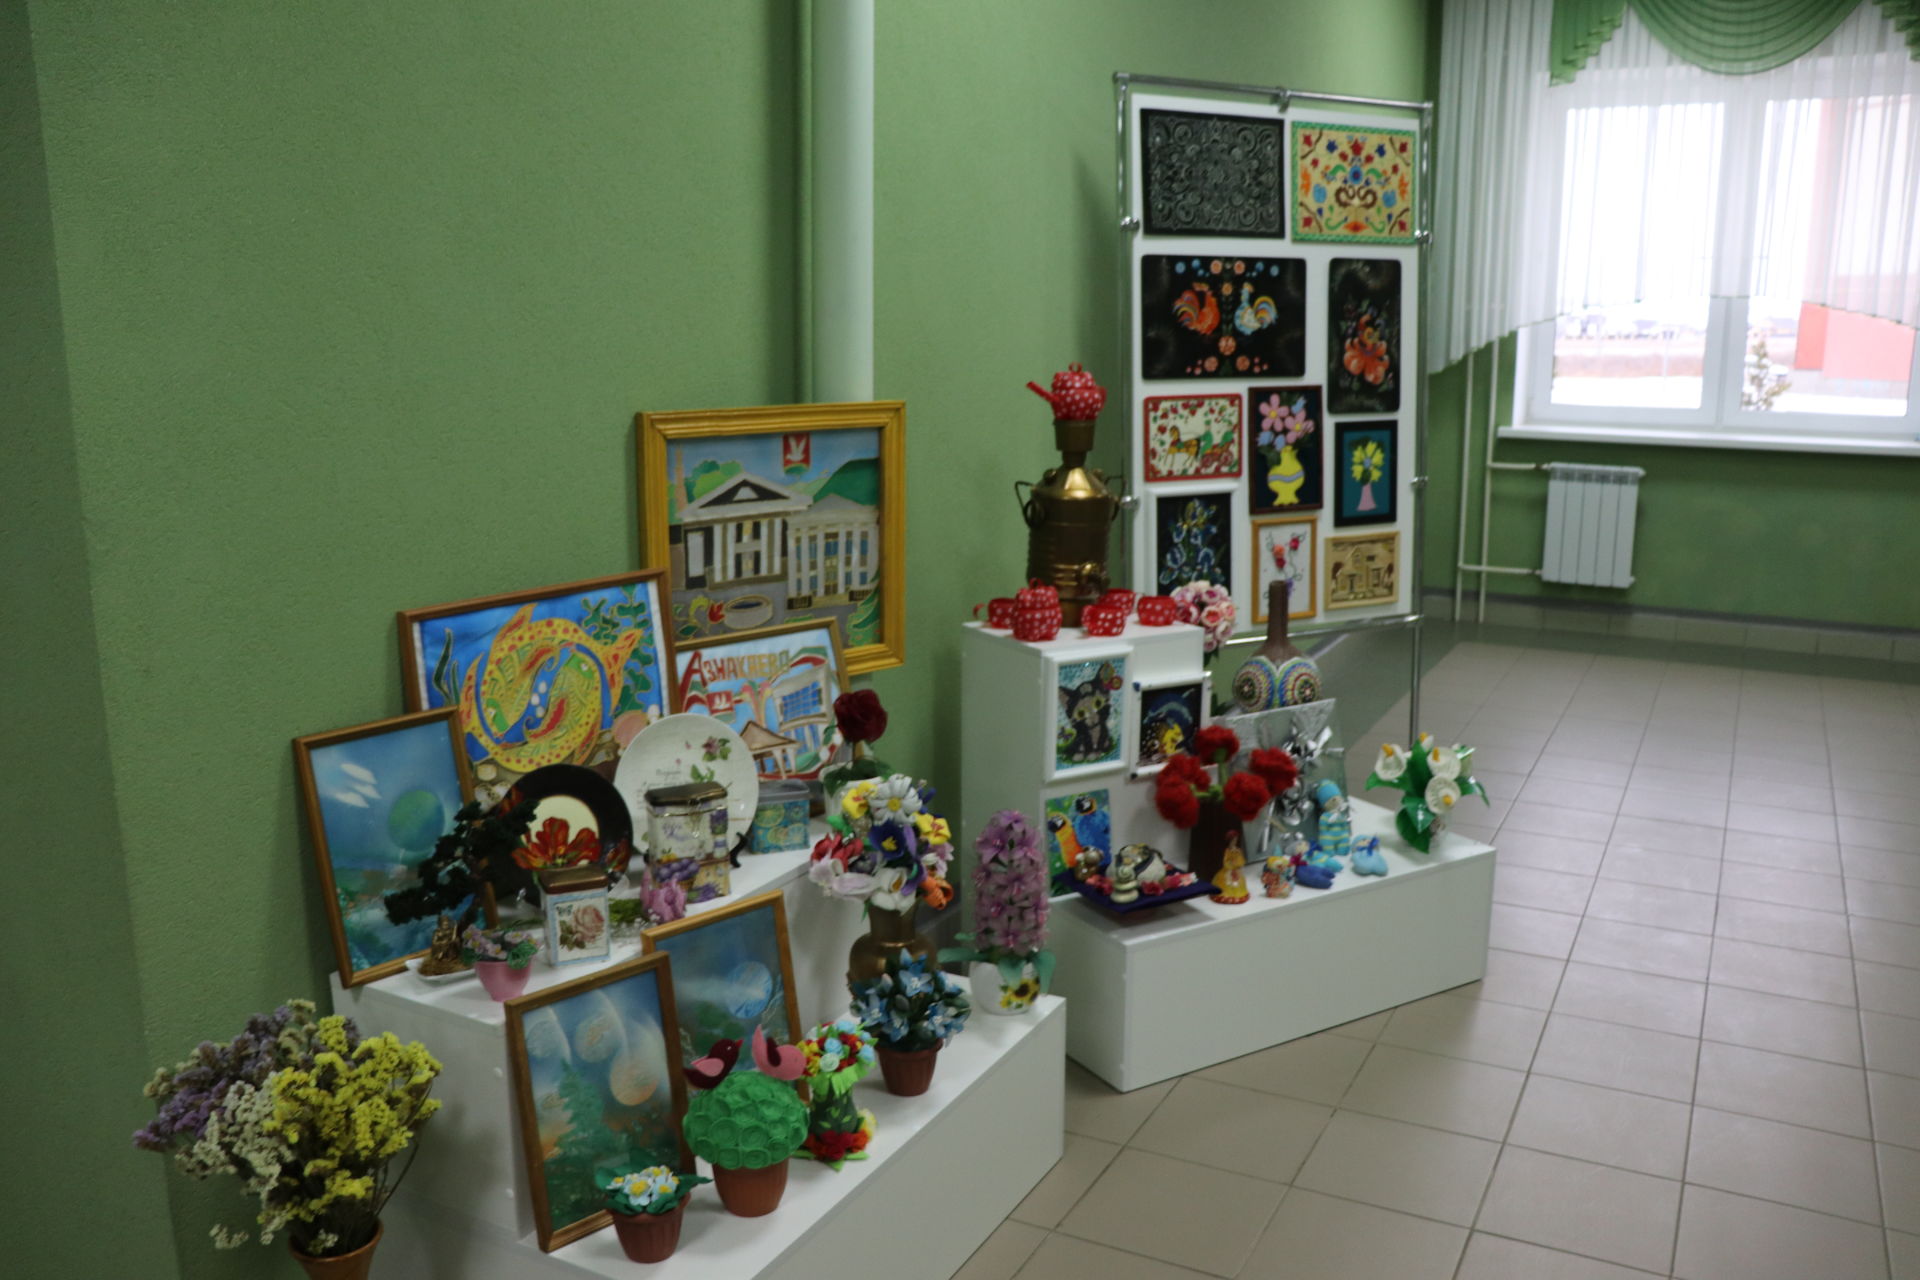 Азнакаевские центры образования "Точка роста" делятся опытом